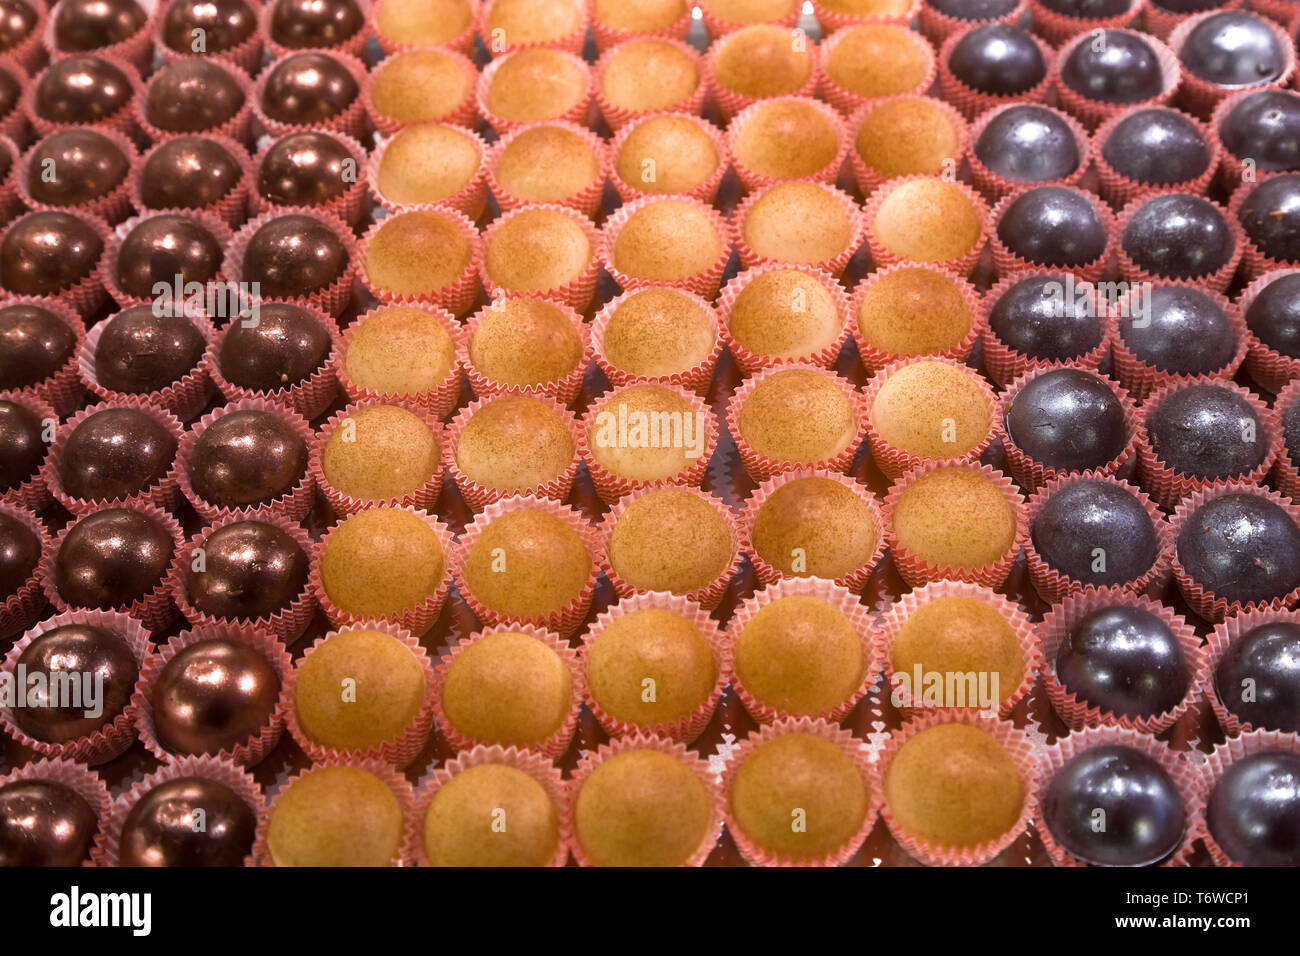 Rovereto, Exquisita (negozio di vini, cioccolato e sapori): praline di cioccolato ripiene di una gelatina di grappa trentina.  [ENG]  Rovereto, Exquis Stock Photo